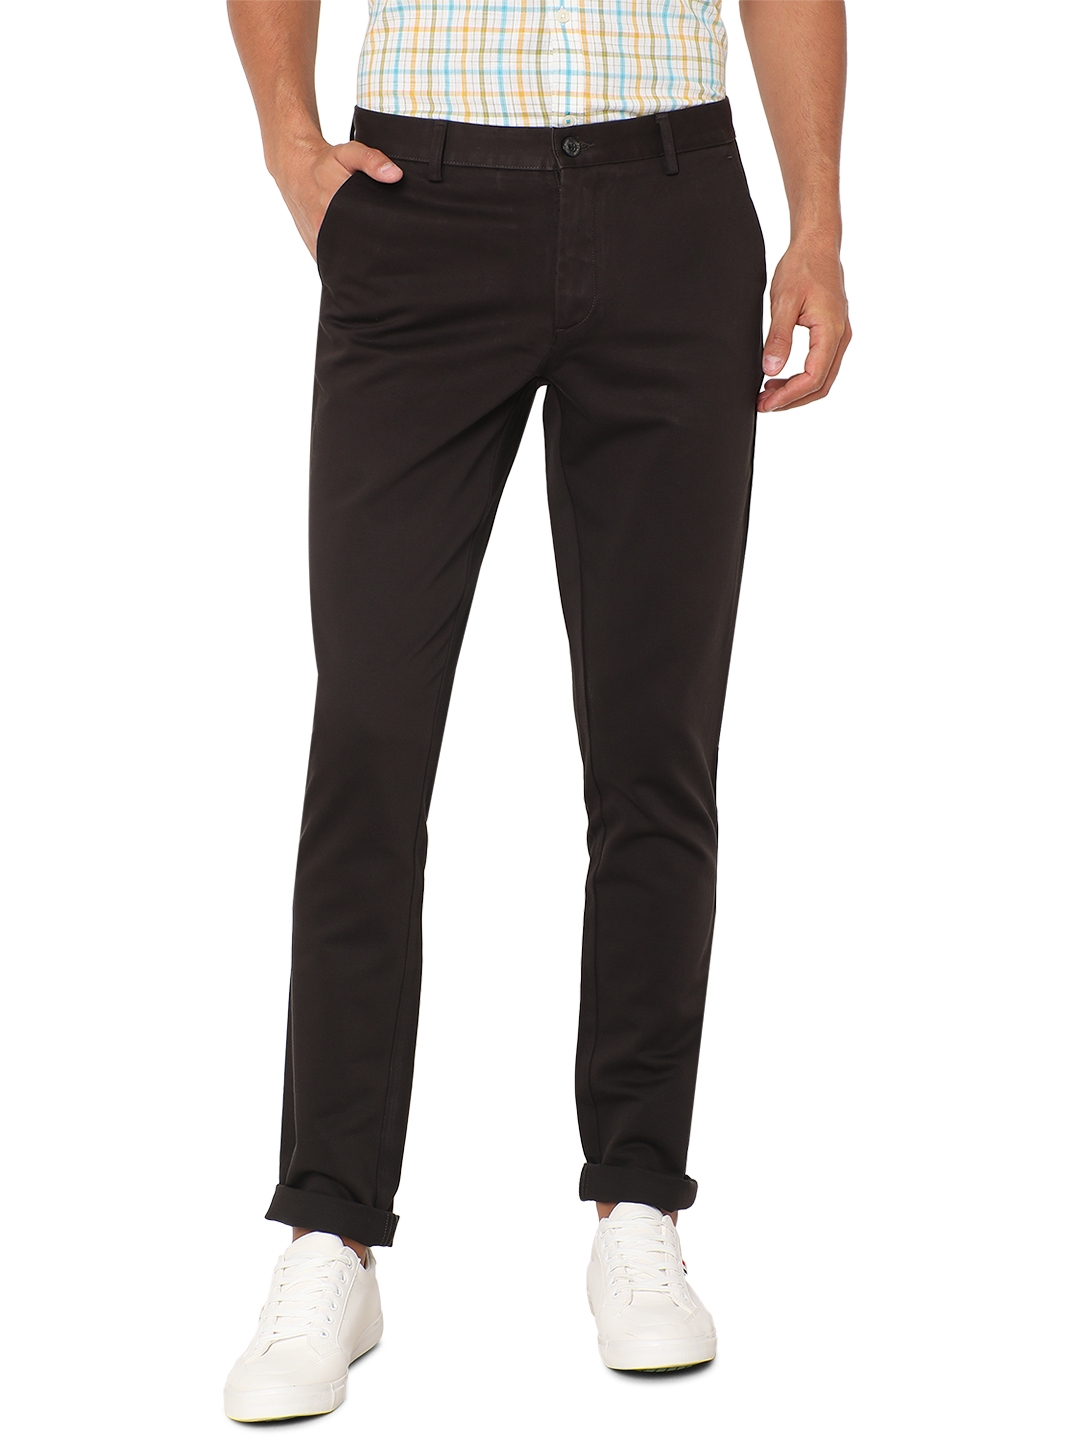 JadeBlue Sport | Black Solid Trousers (JBCT149/4,BLACK SELF)